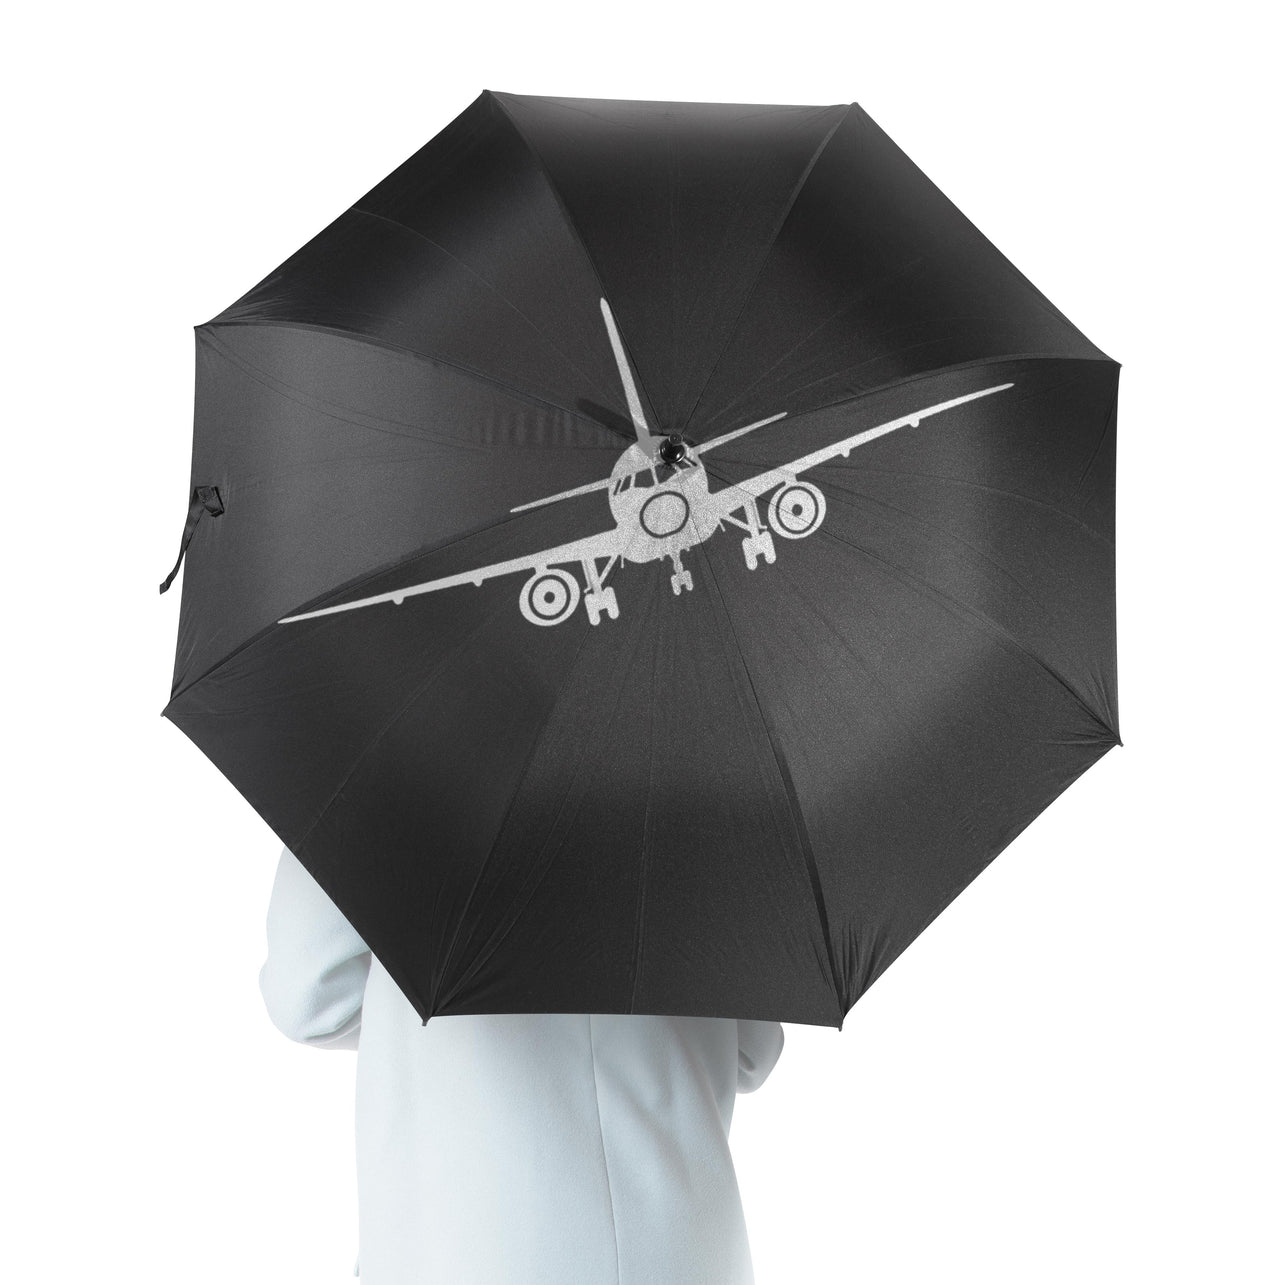 Sukhoi Superjet 100 Silhouette Designed Umbrella